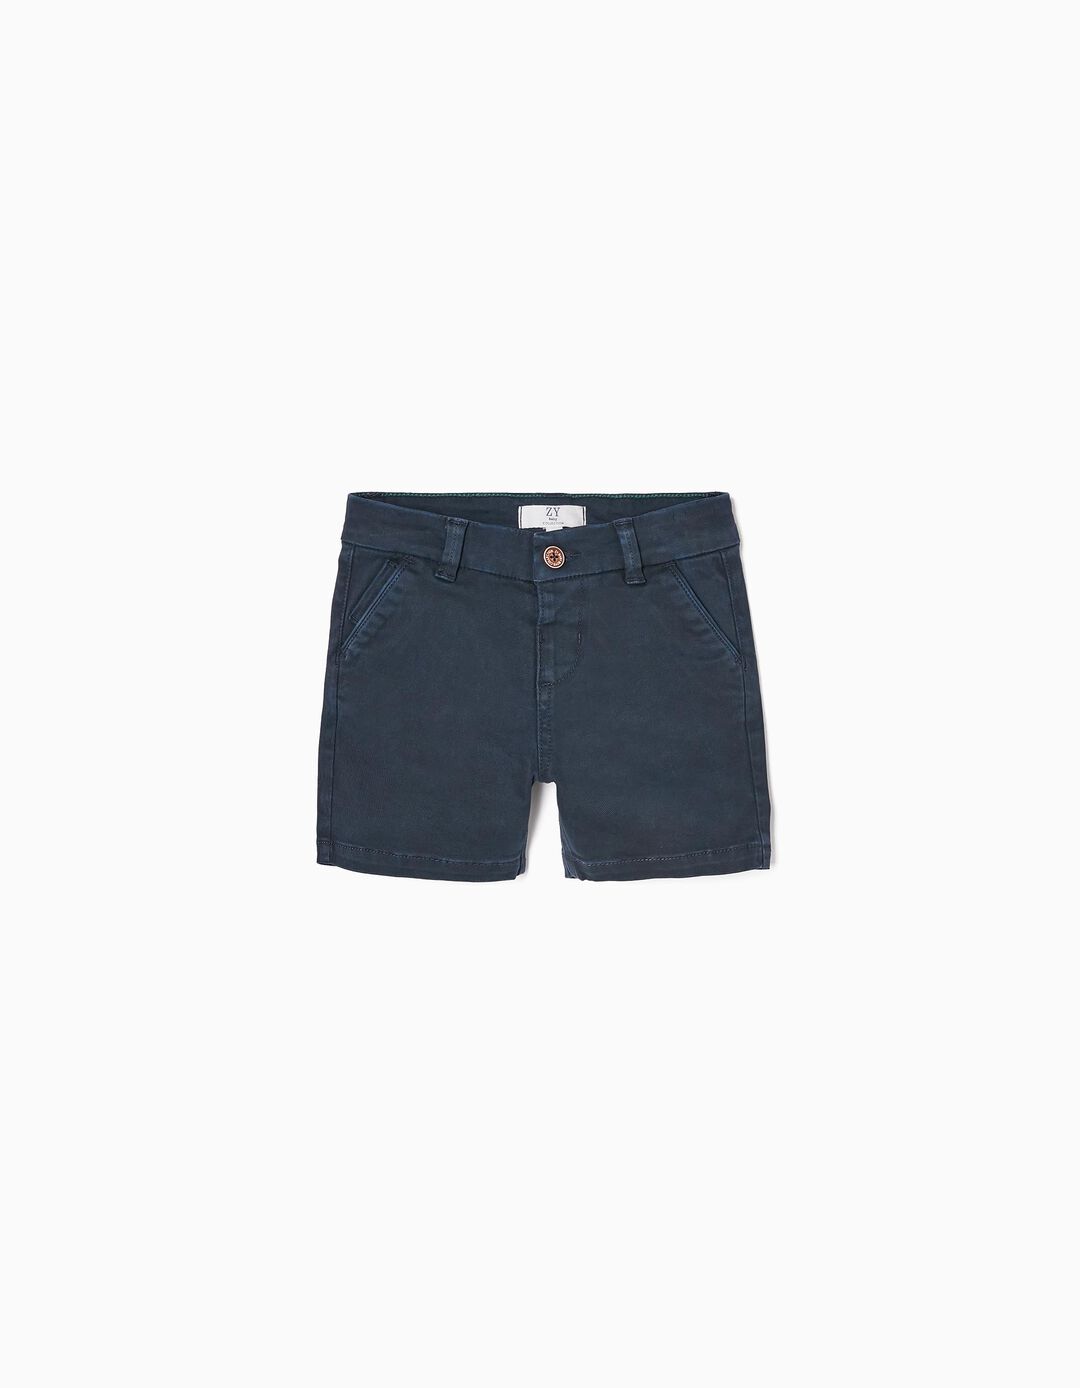 Twill Shorts for Baby Boys, Dark Blue